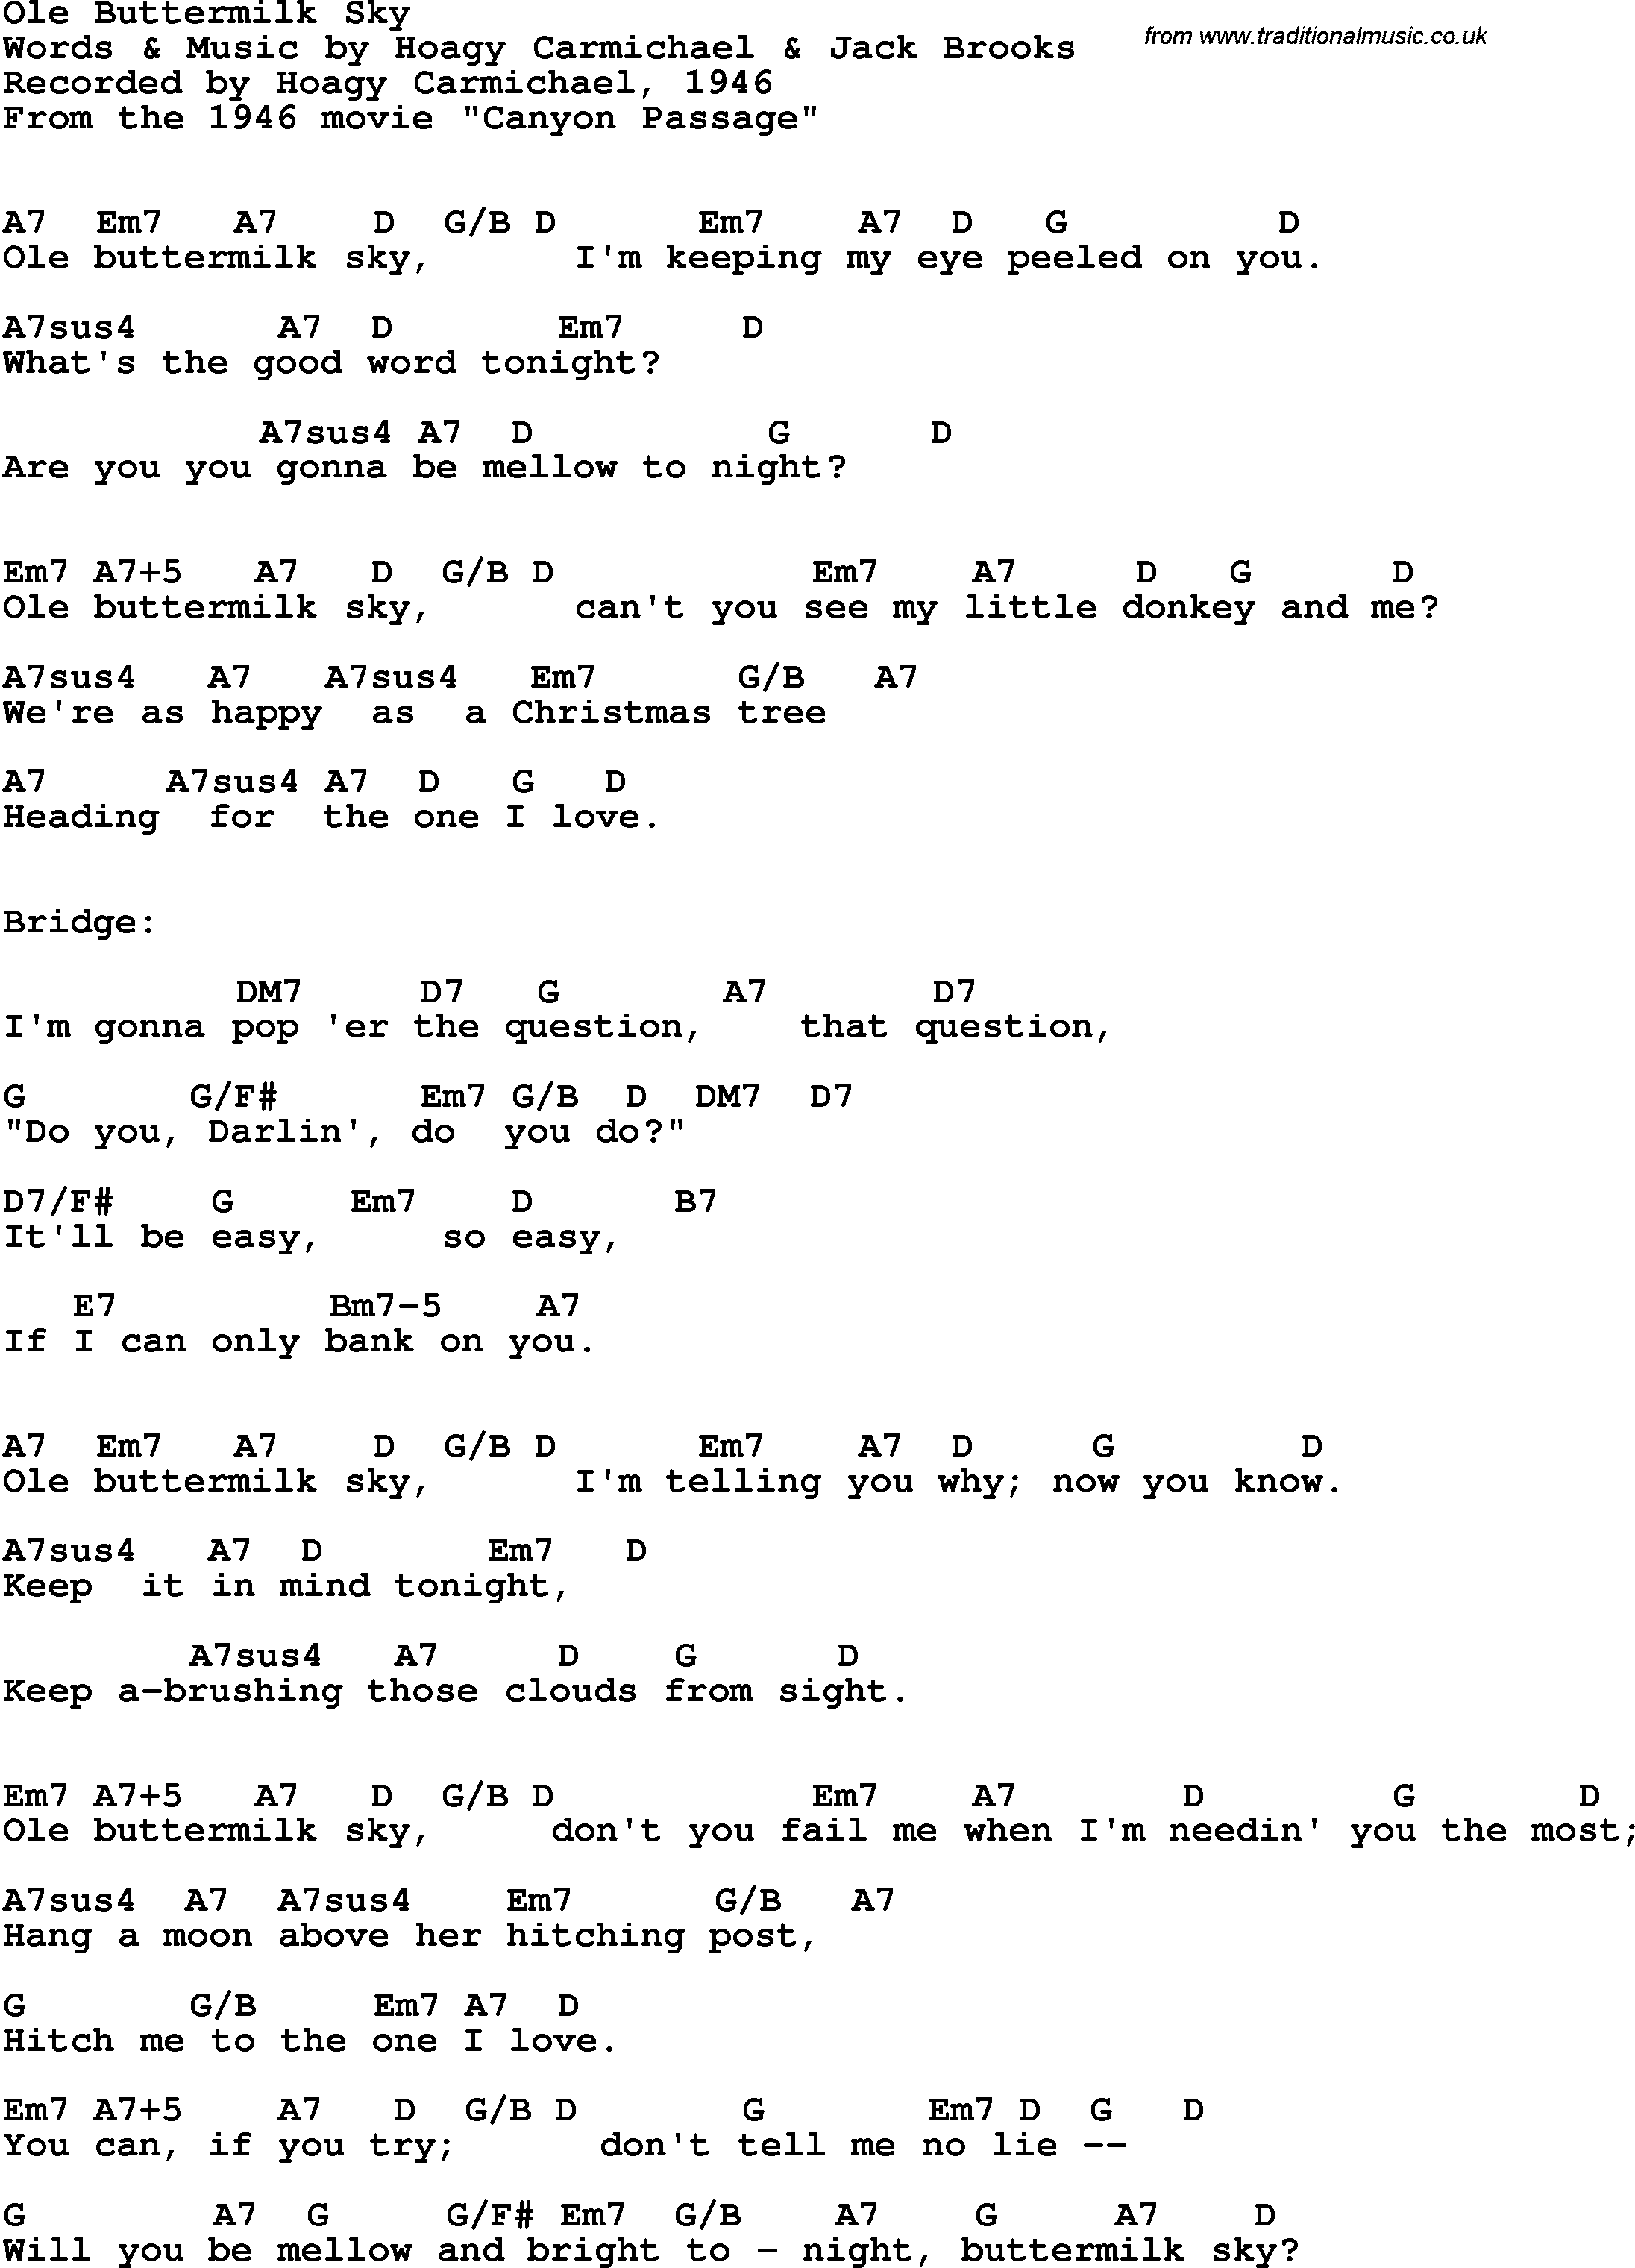 Song Lyrics with guitar chords for Ole Buttermilk Sky - Hoagy Carmichael, 1946